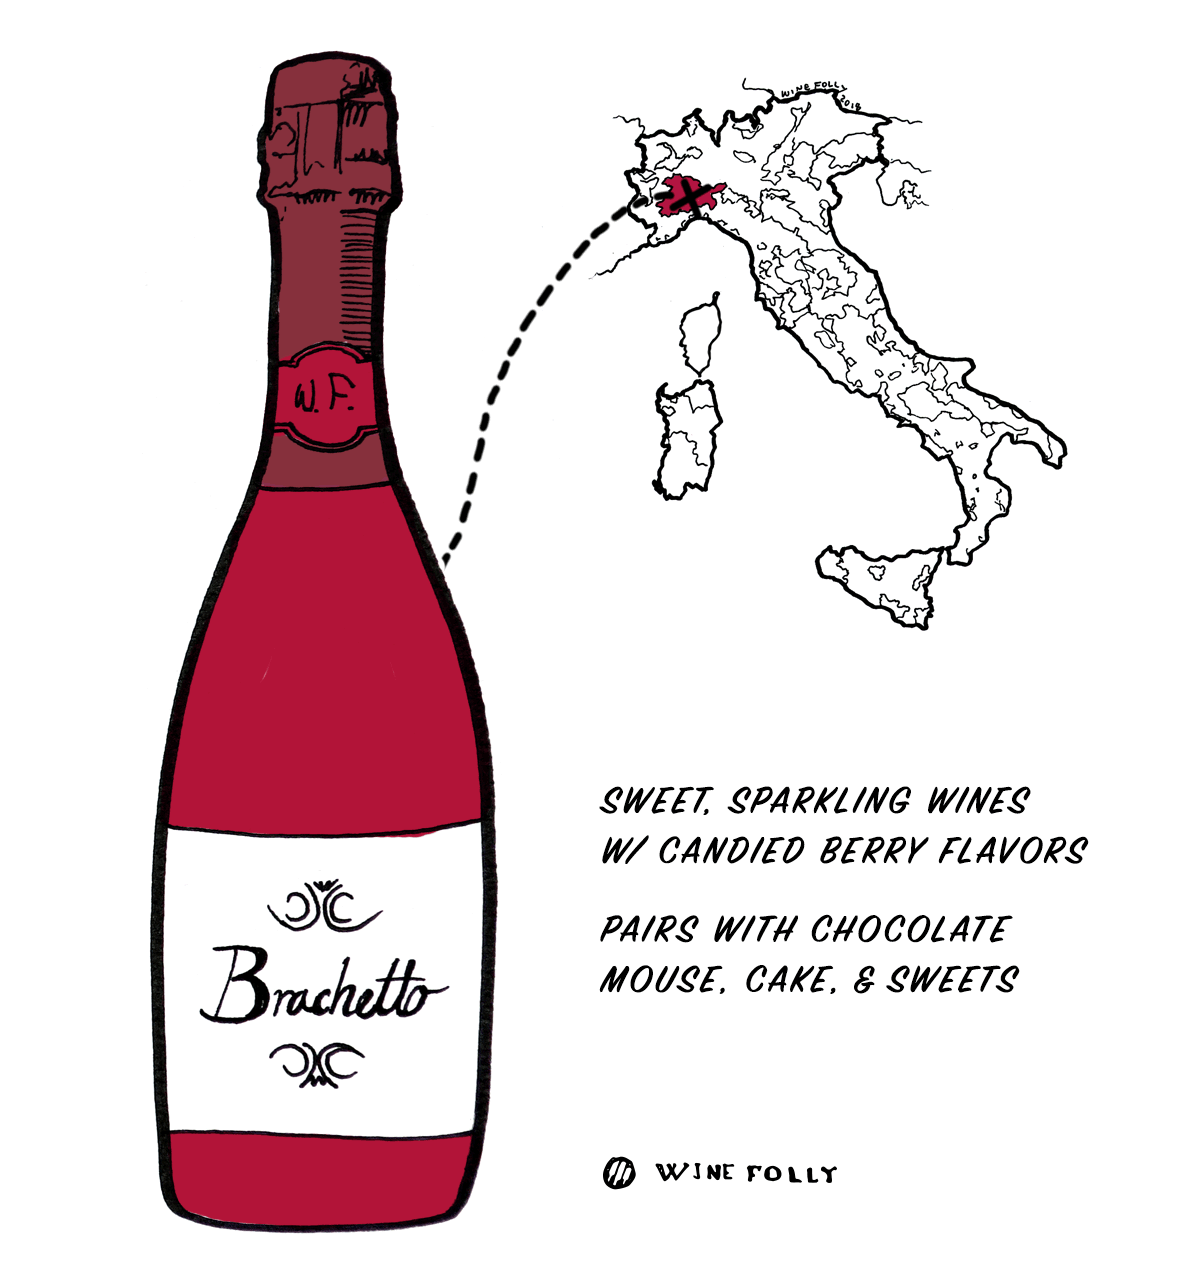 इटली से ब्रेचेटो रेड वाइन अंगूर - इतालवी शराब में शुरुआती के लिए बढ़िया विकल्प - वाइन फॉली द्वारा चित्रण